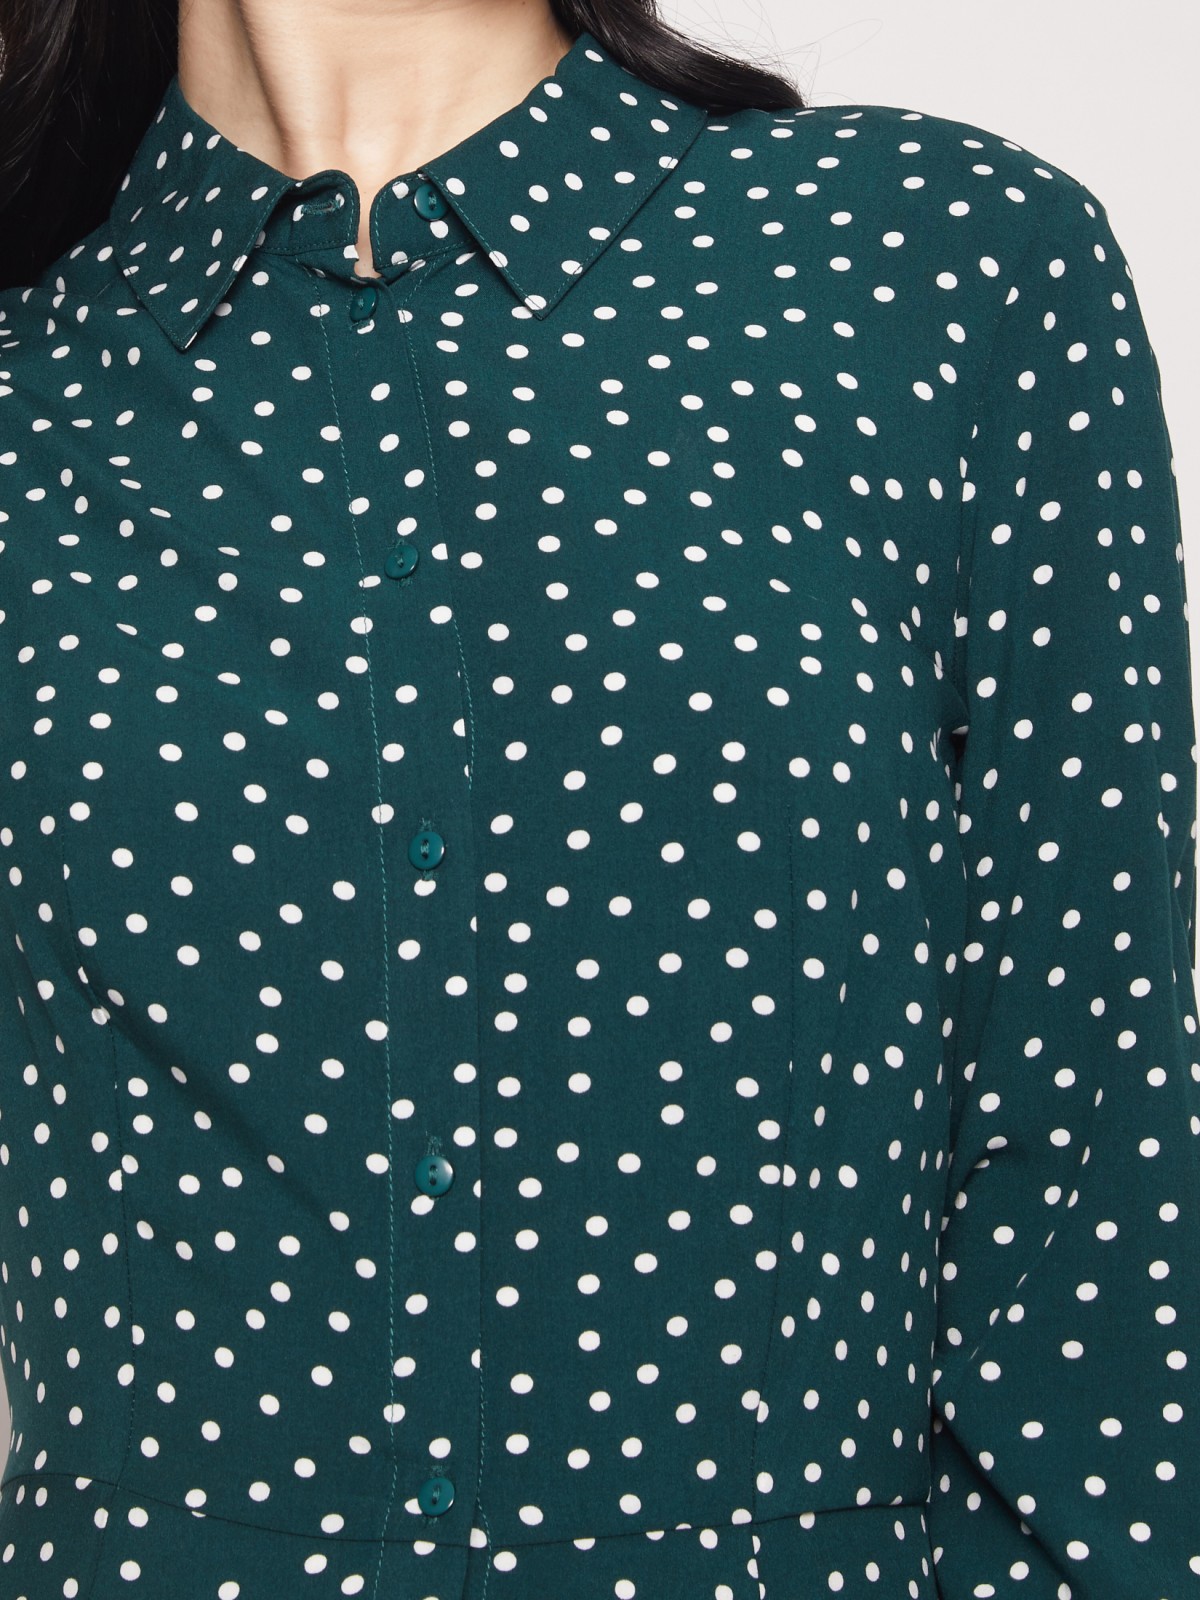 Платье-рубашка в горошек zolla 02131827Y023, цвет темно-зеленый, размер XS - фото 5